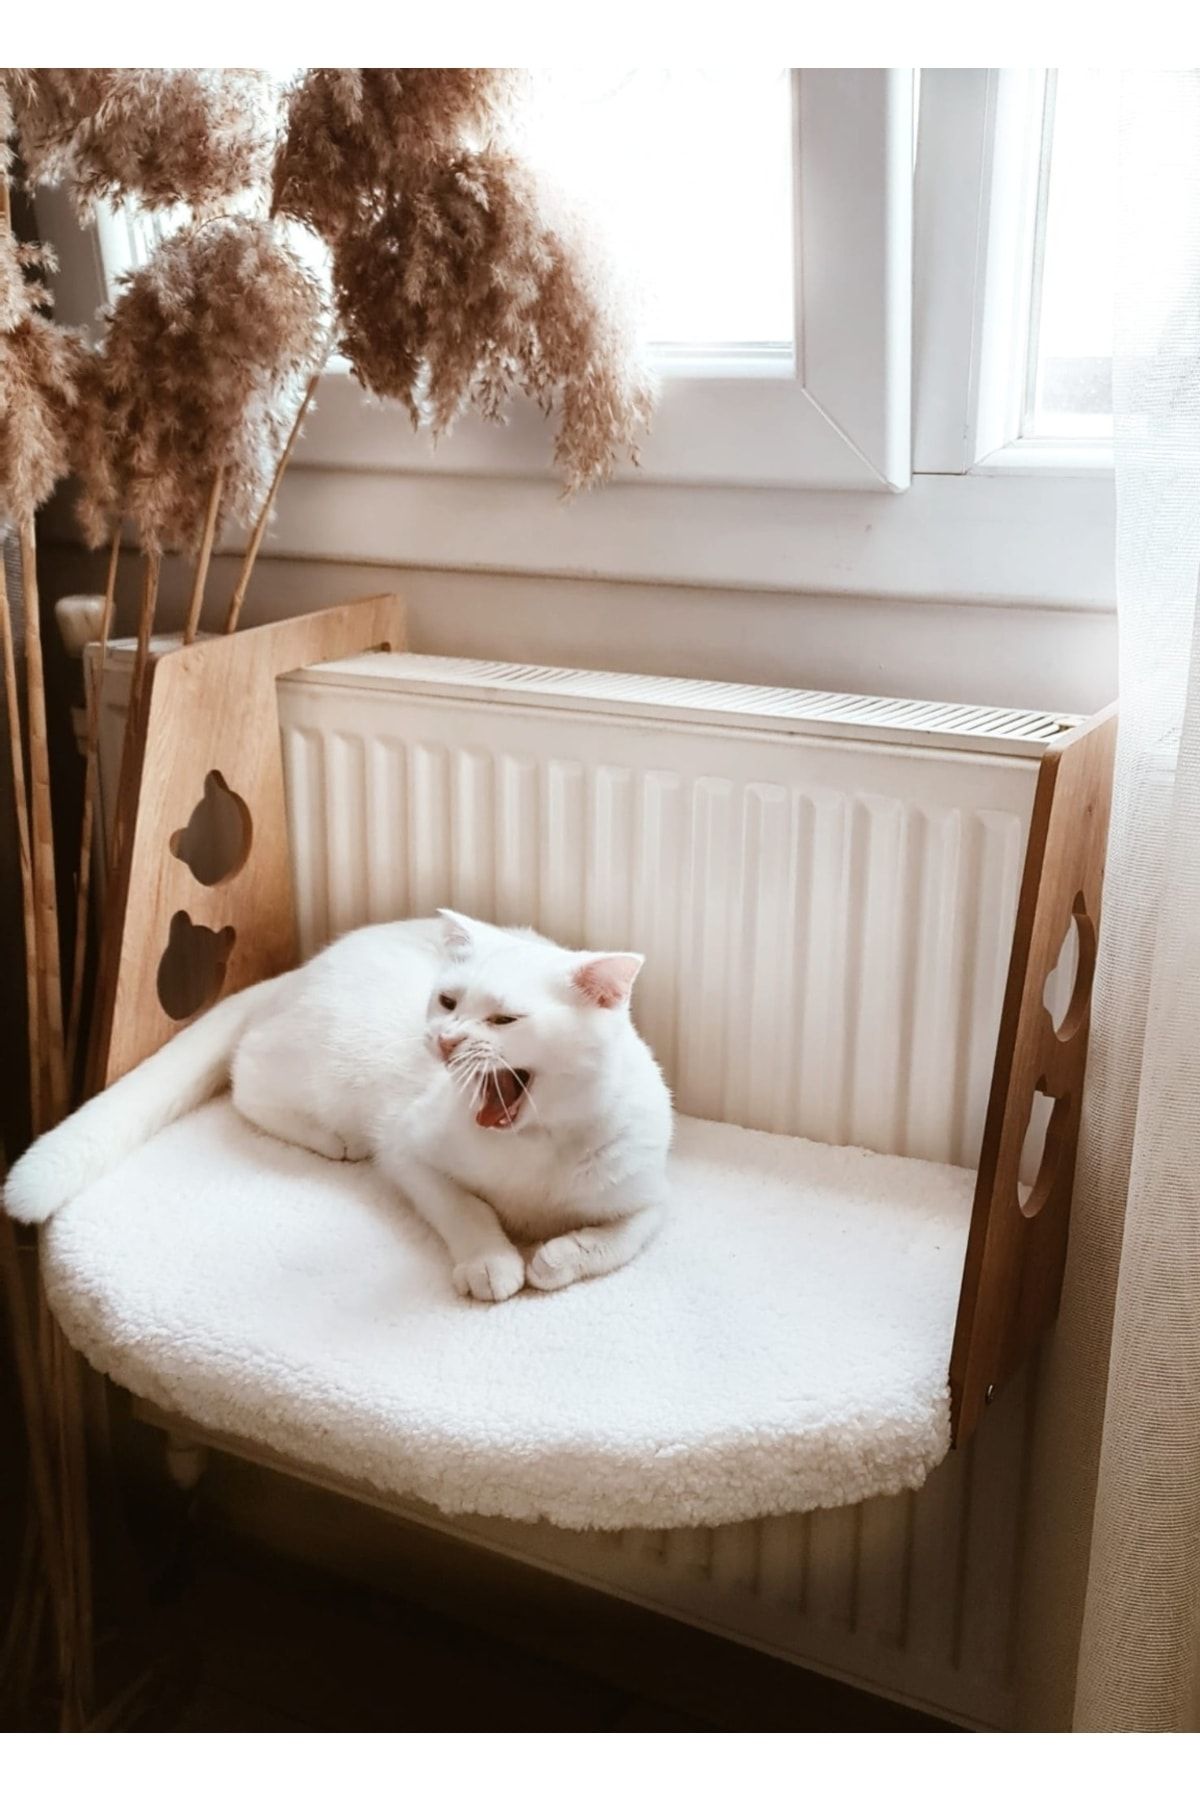 POFENK Kedi Yatağı Kalorifer Petek Radyatör Yatağı Geniş Kedi Yatağı Welsoft Peluş Kumaş Beyaz